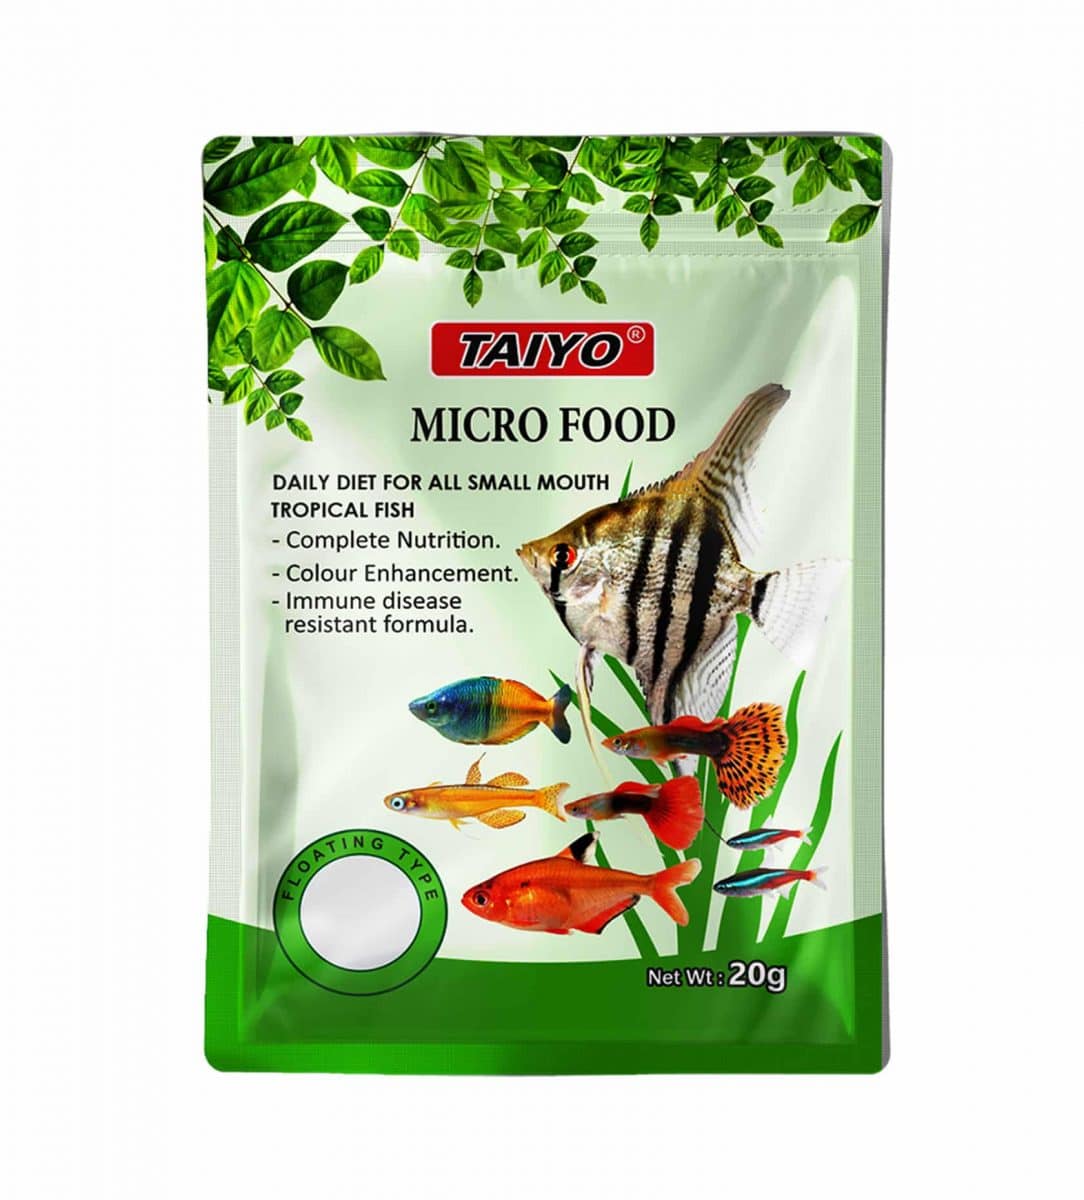 Taiyo-Micro-Food-Green